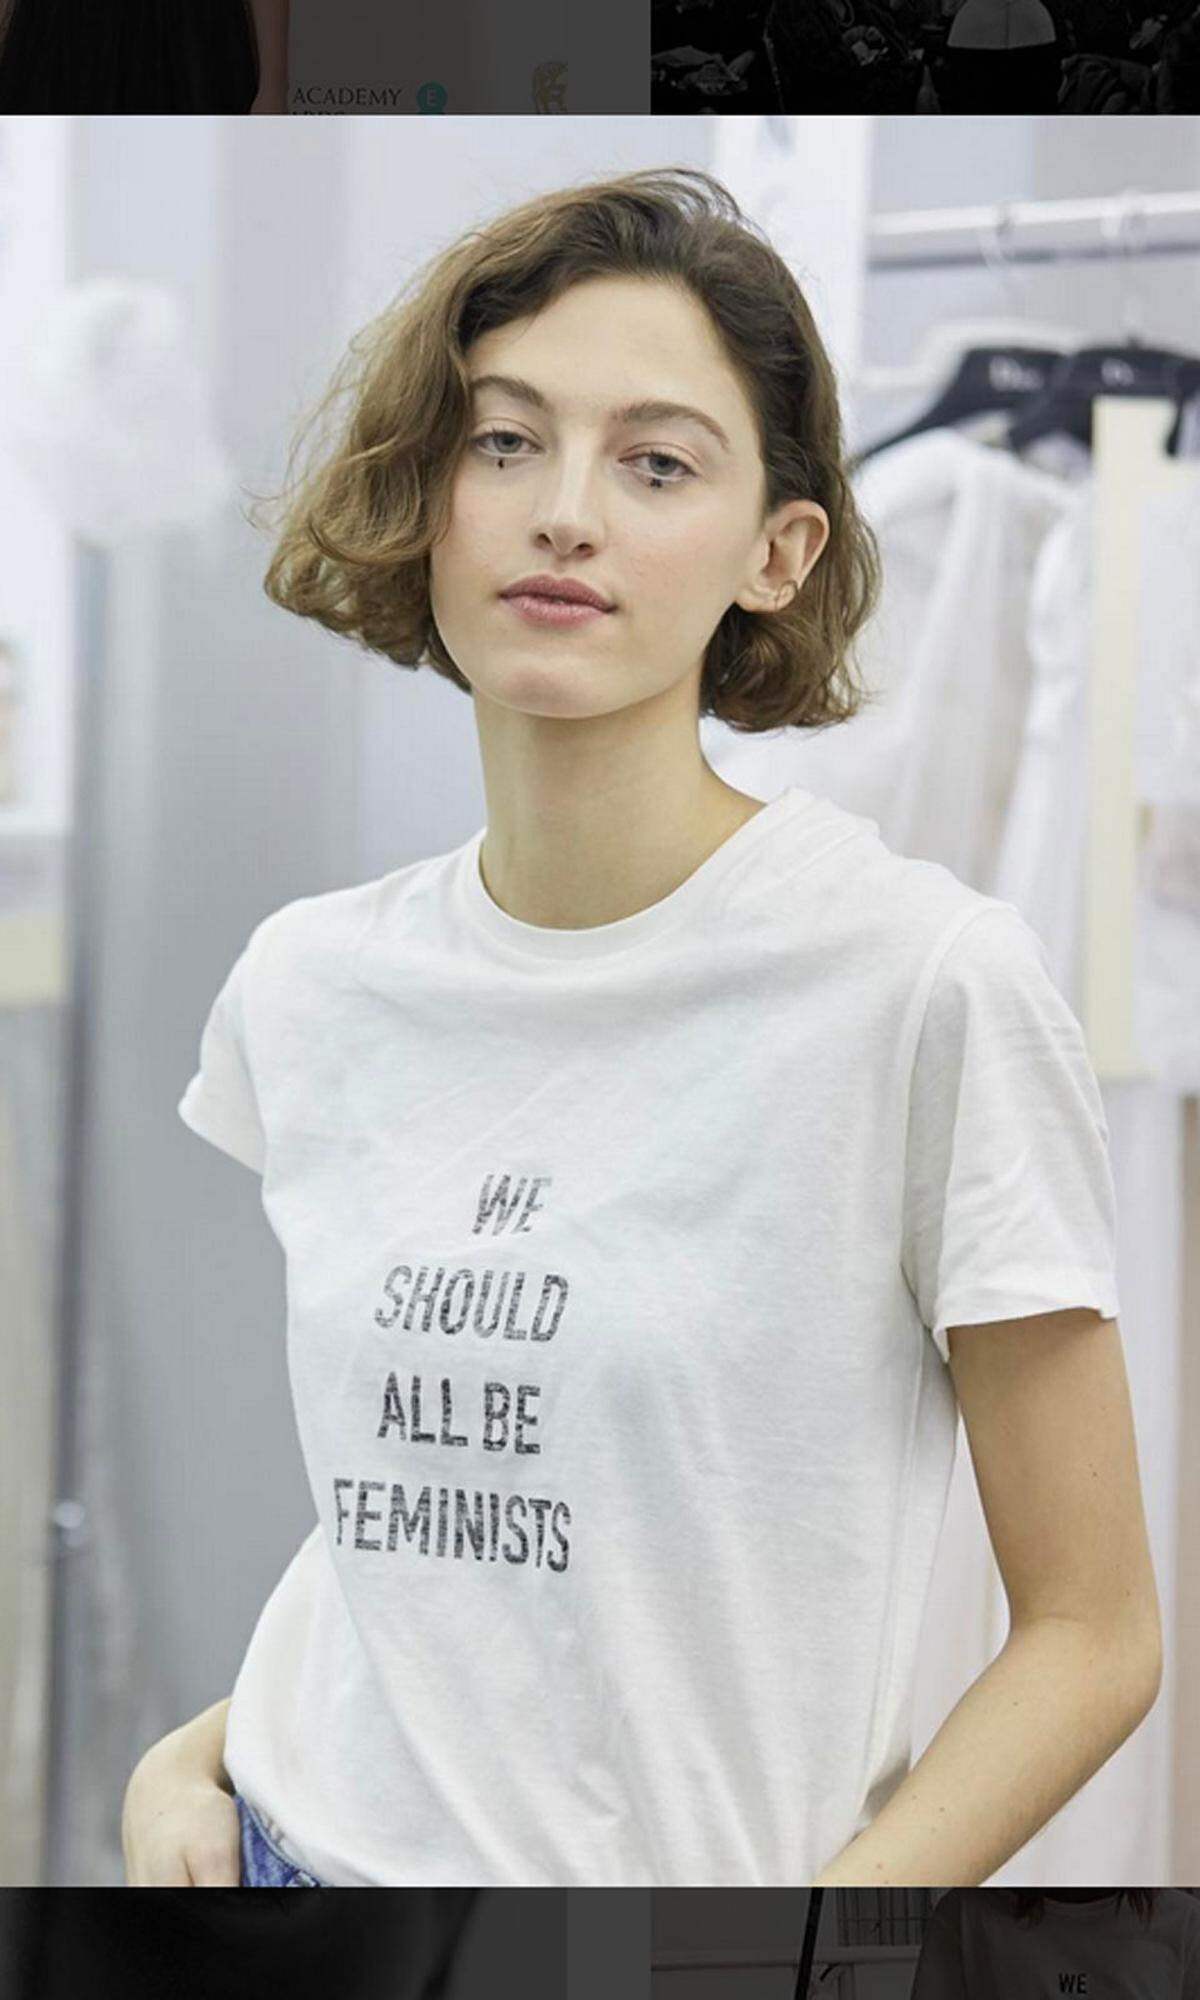 Denn Maria Grazia Chiuri, die neue Chefdesignerin des Hauses, ist die selbst erklärte Feministin der Branche. "We should all be feminists" hieß der Slogan ihrer letzten Kollektion.